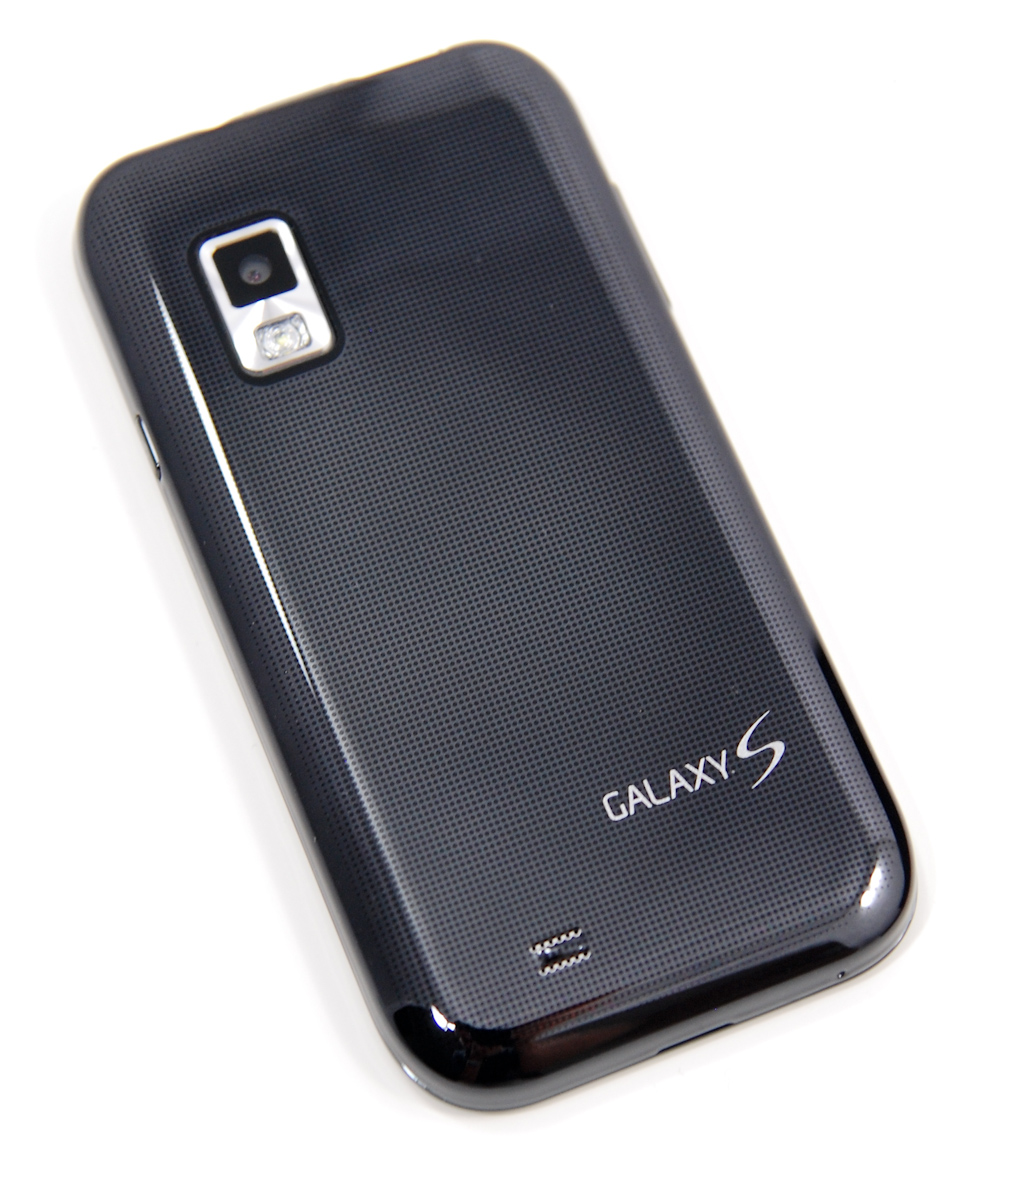 samenvoegen goedkoop Minachting Samsung Fascinate Review: Verizon's Galaxy S Smartphone